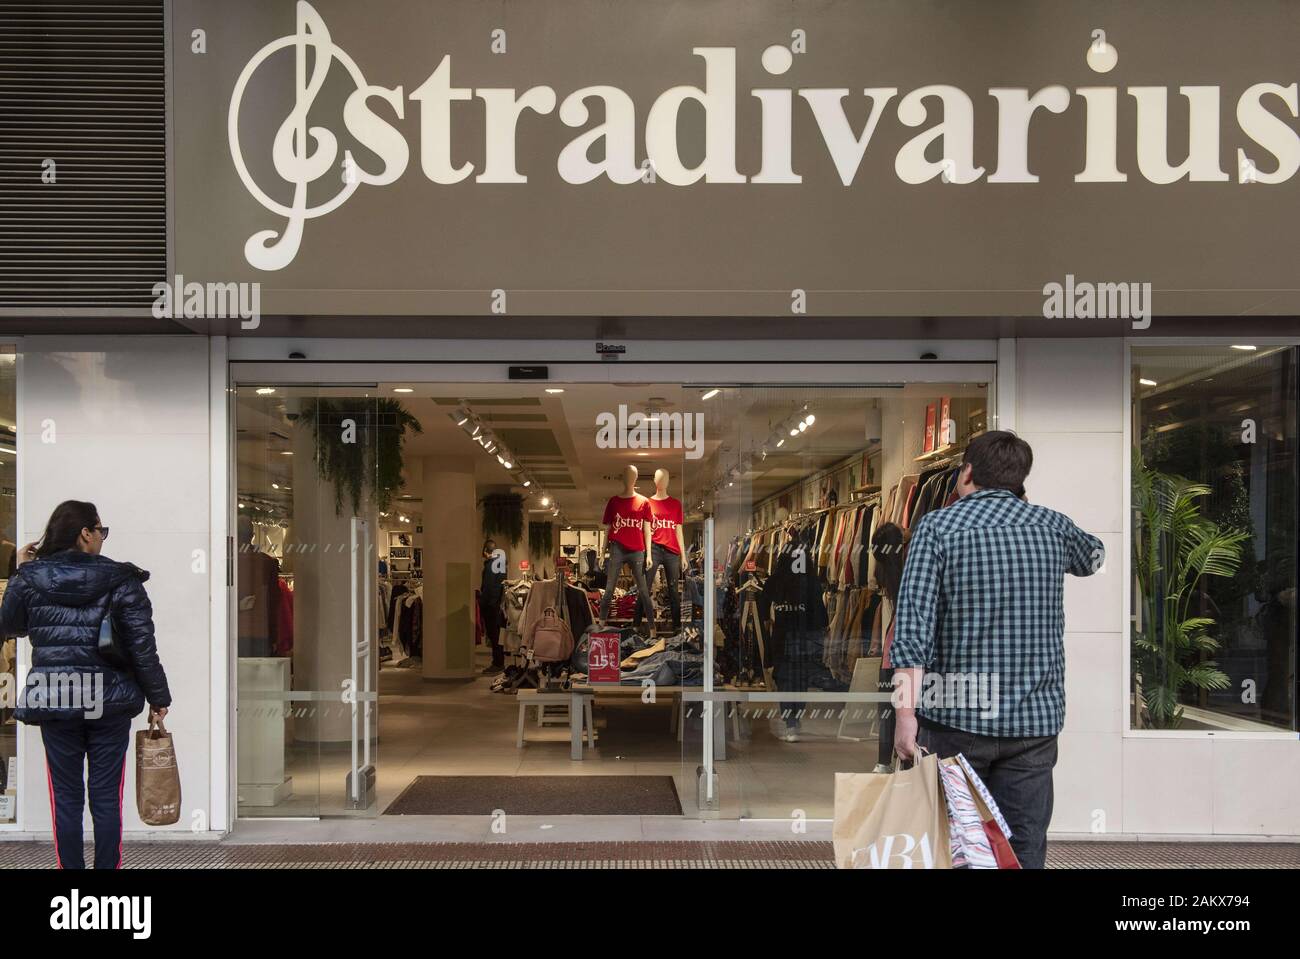 tienda Absorbente exótico A partir del 9 de enero de 2020, España: La mujer española de ropa de marca  de moda de España, propiedad del grupo Inditex, Stradivarius, tienda visto  en España. (Crédito de la